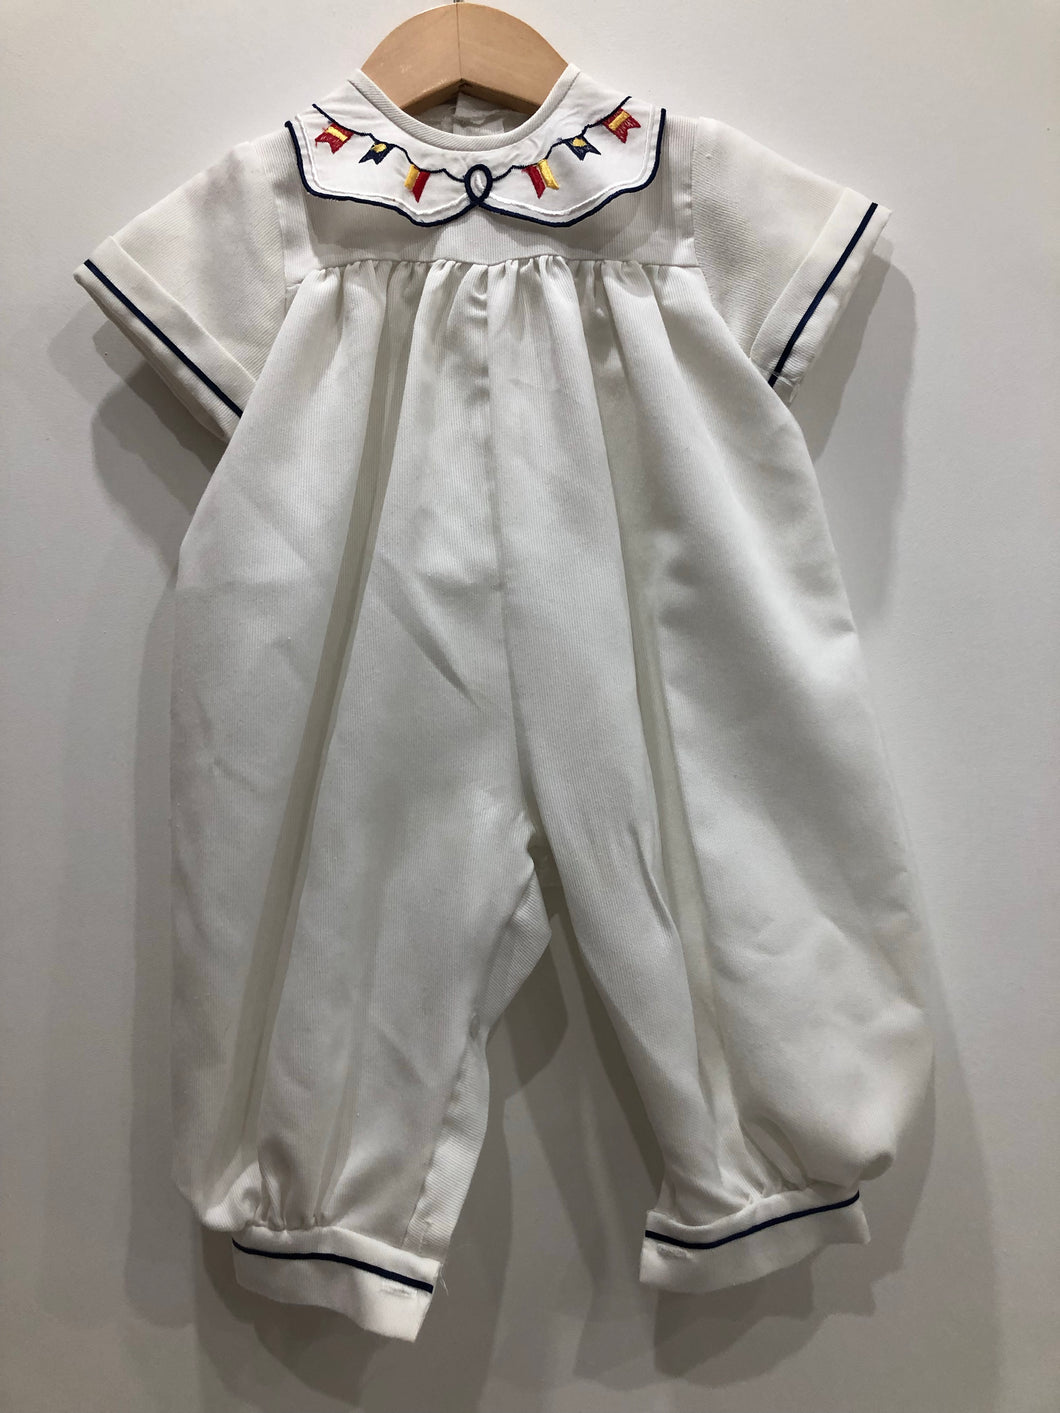 Vintage White Sailor Romper Suit